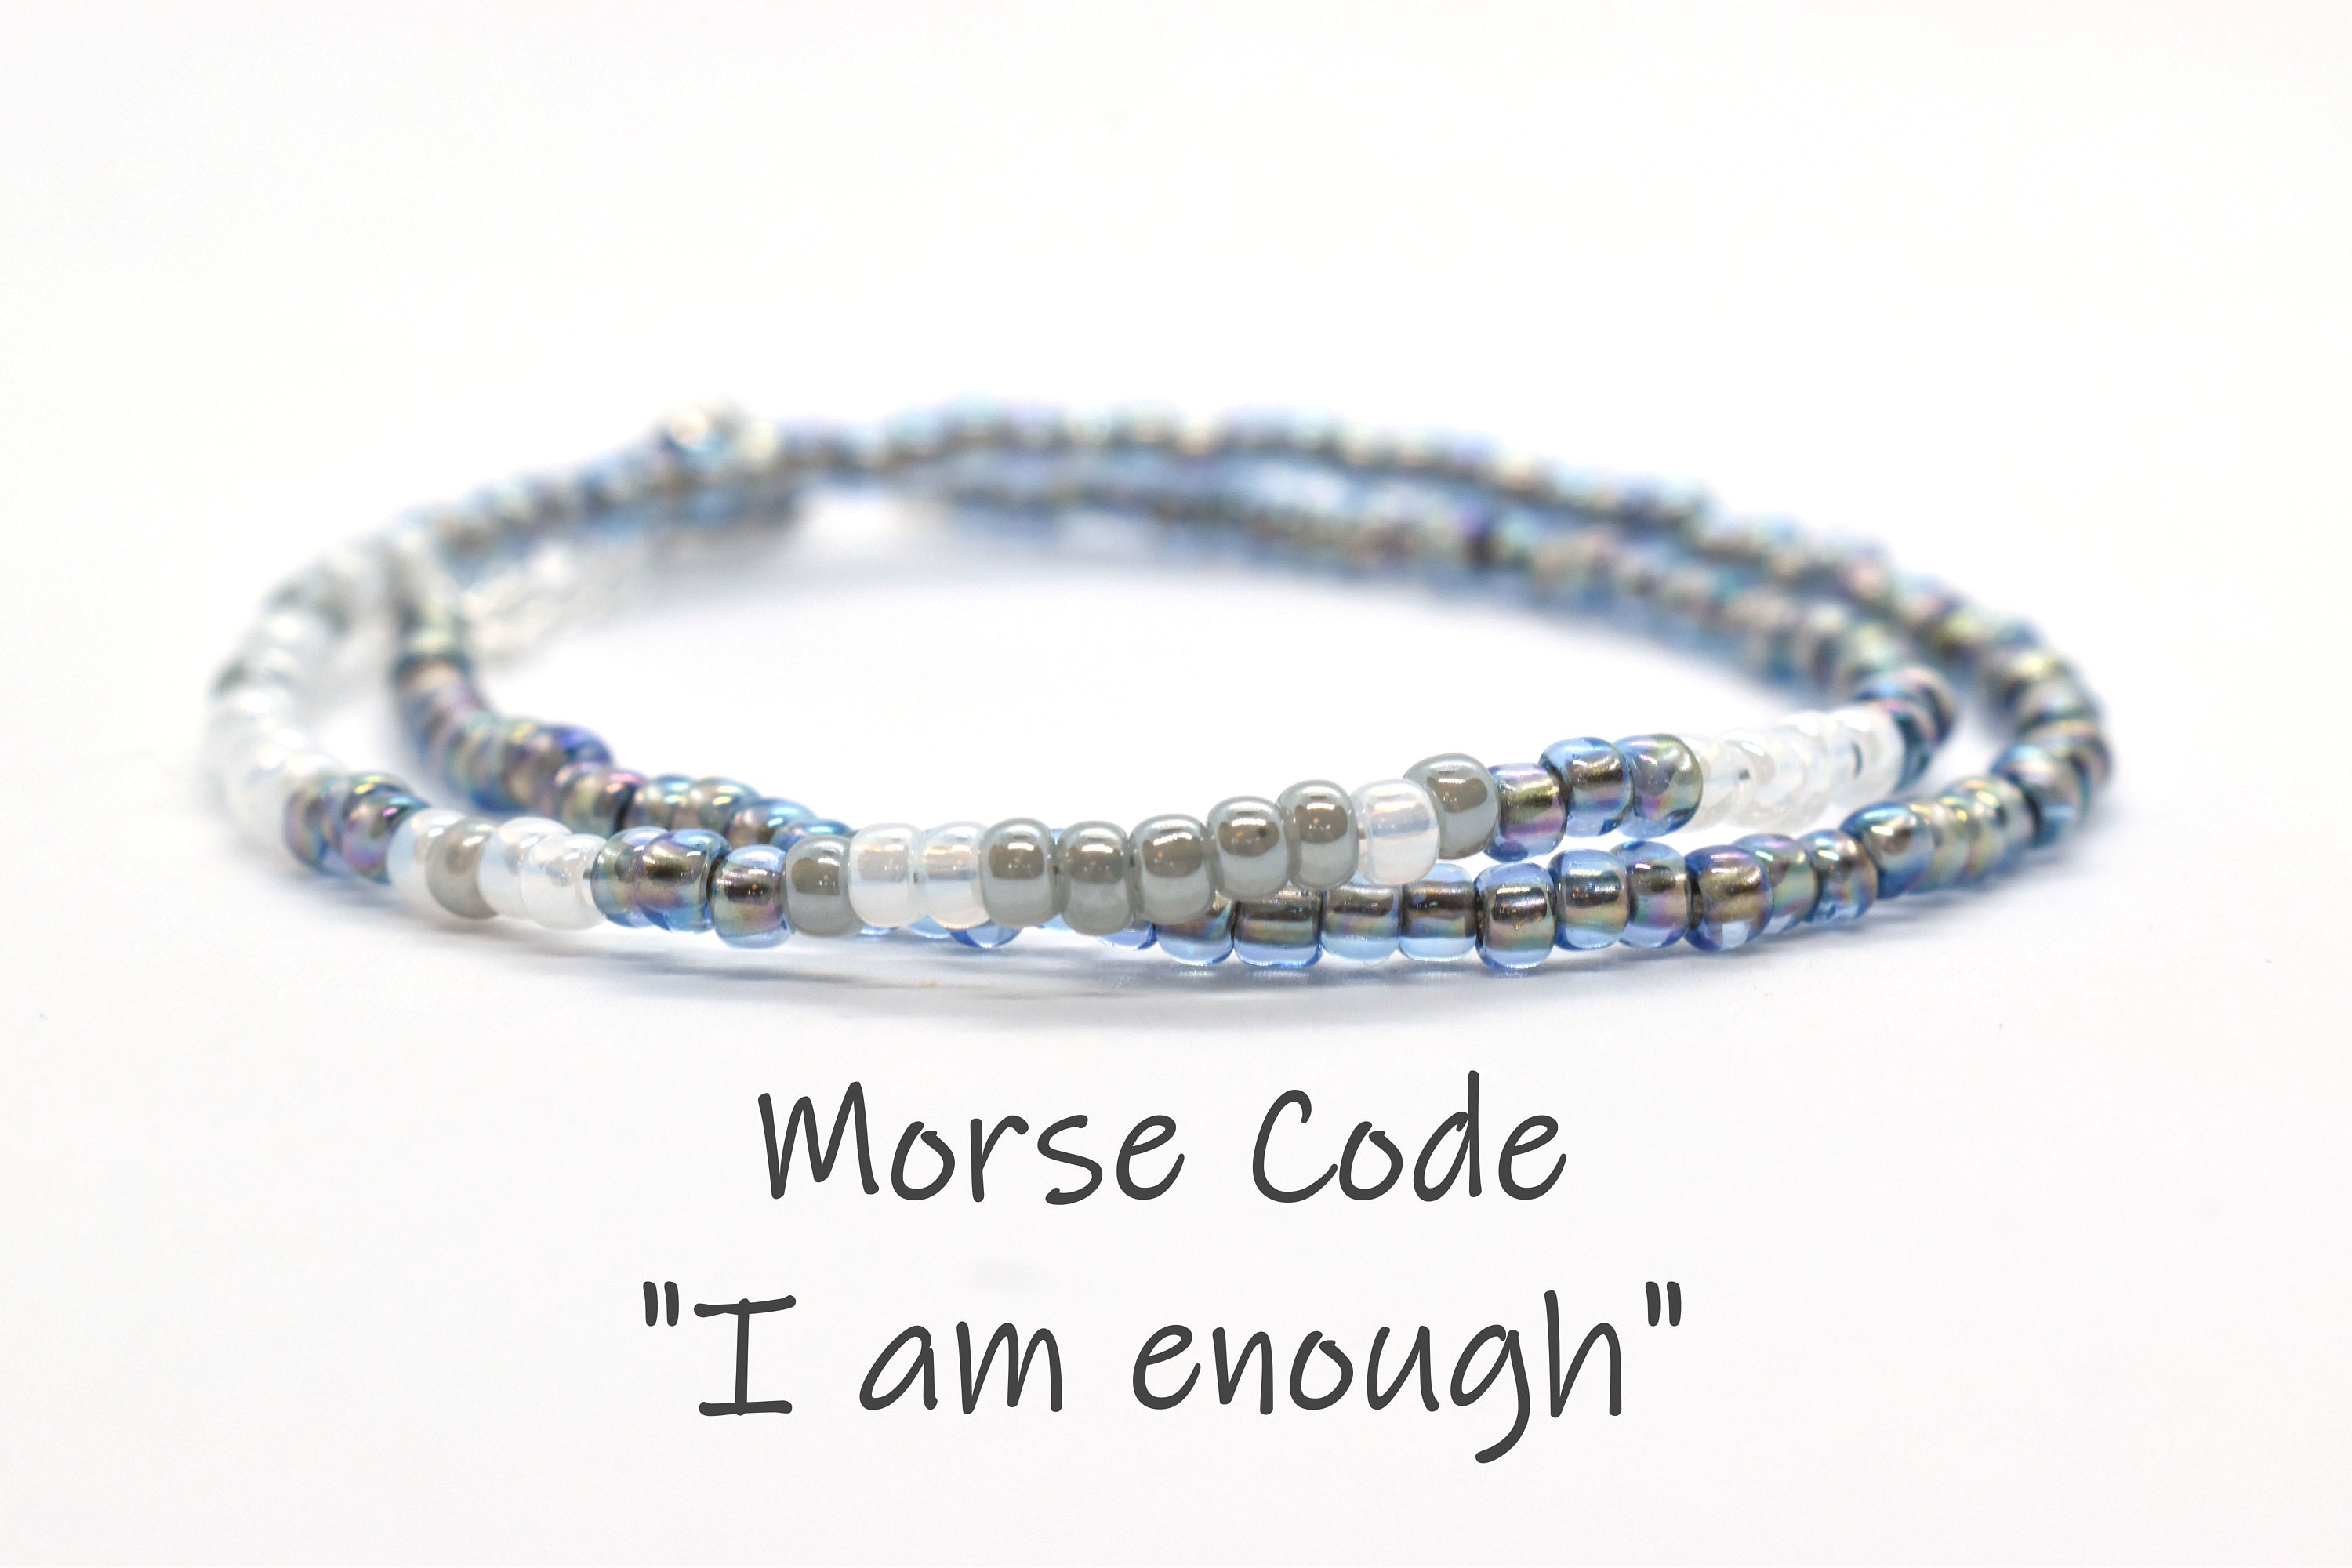 I Am Enough Bracelet Morse Code Encouragement Bracelet | Etsy